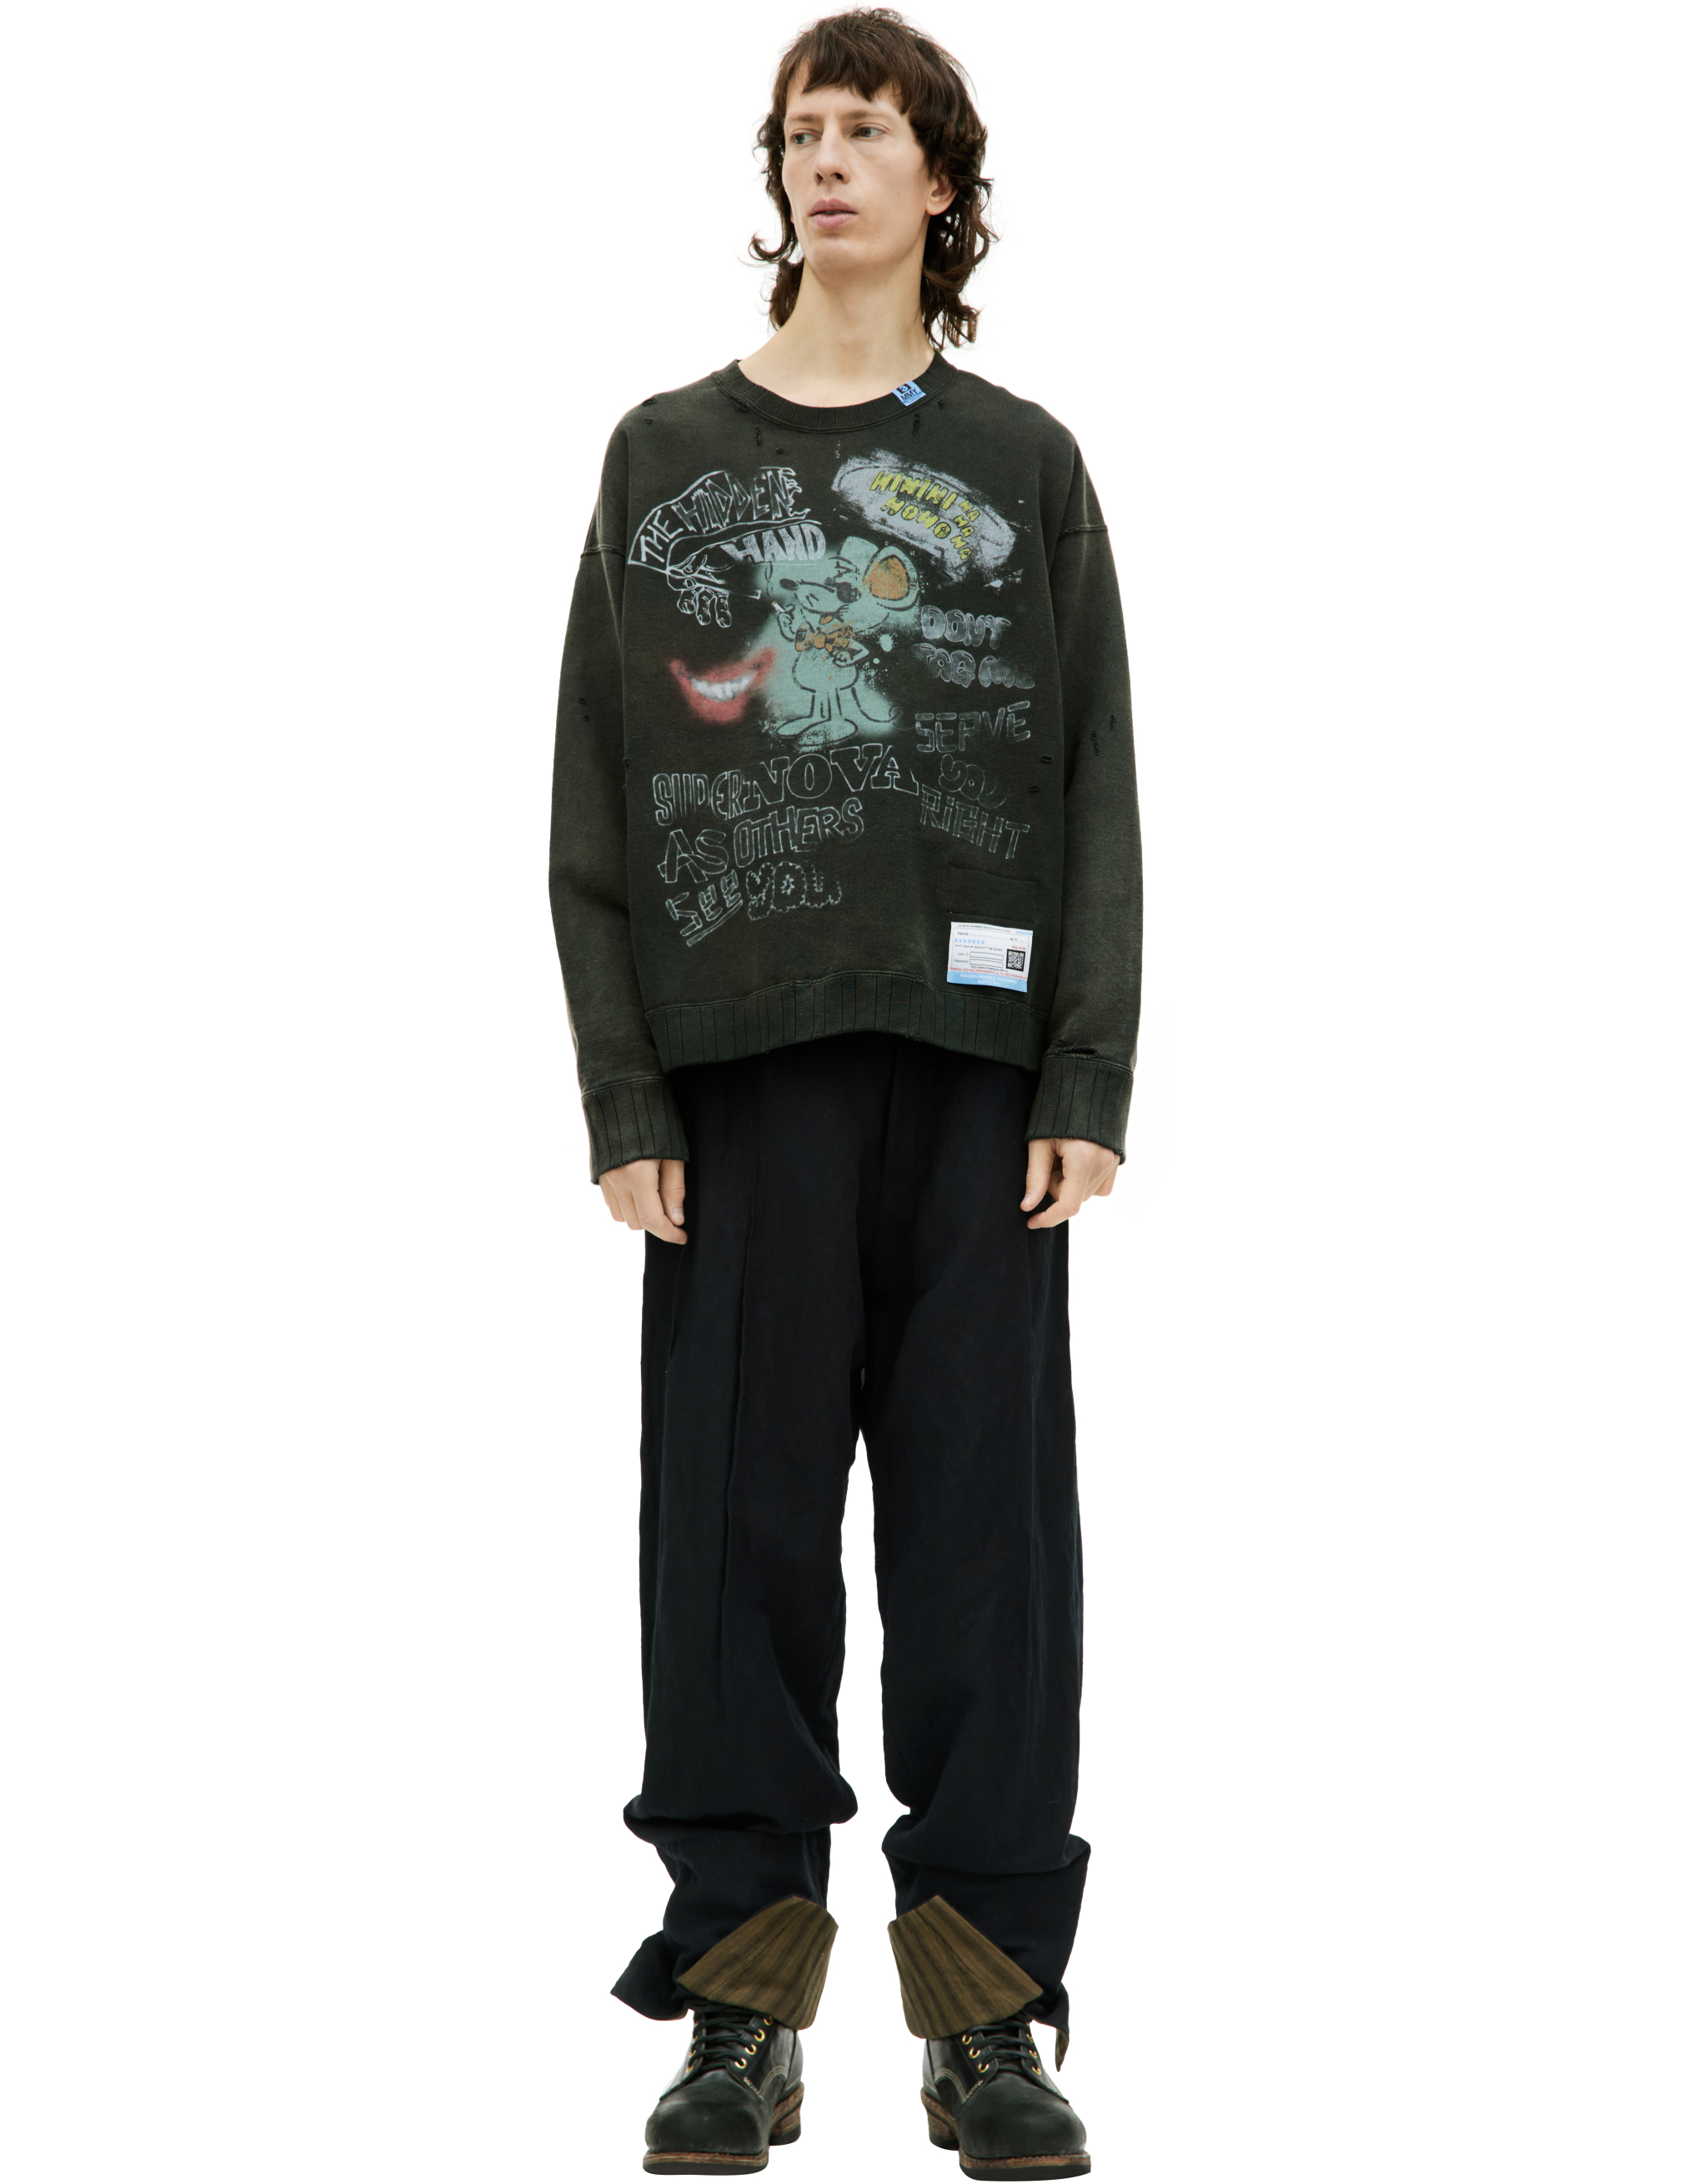 Хлопковый свитшот с принтом Maison Mihara Yasuhiro A11PO593/BLACK, размер 48;50